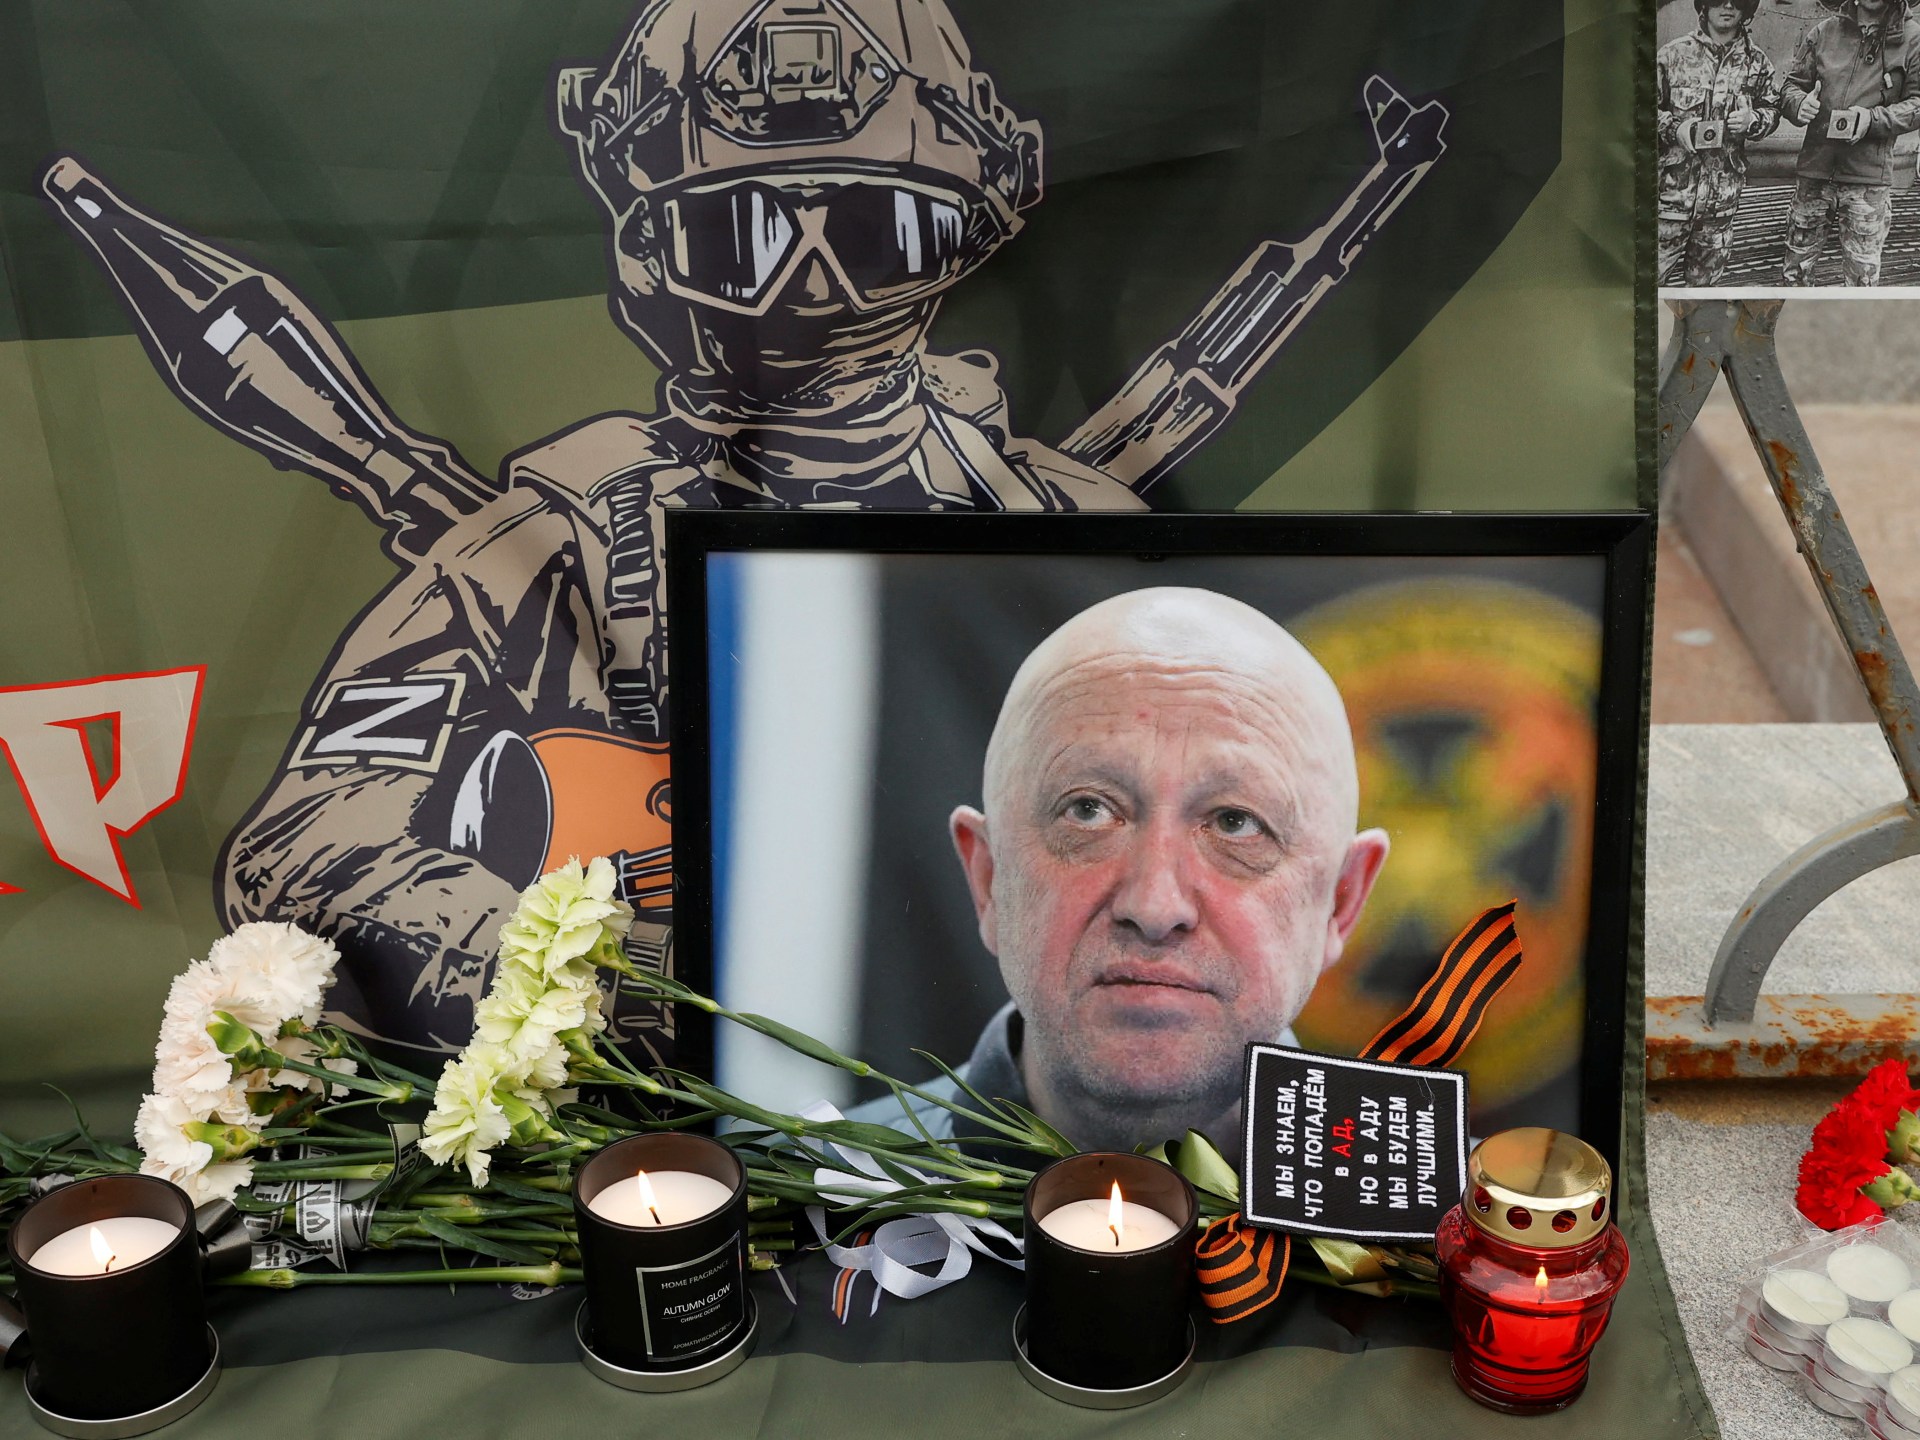 روسيا تصف تقرير صحيفة أميركية بشأن مقتل بريغوجين بالخيال الرخيص | أخبار – البوكس نيوز